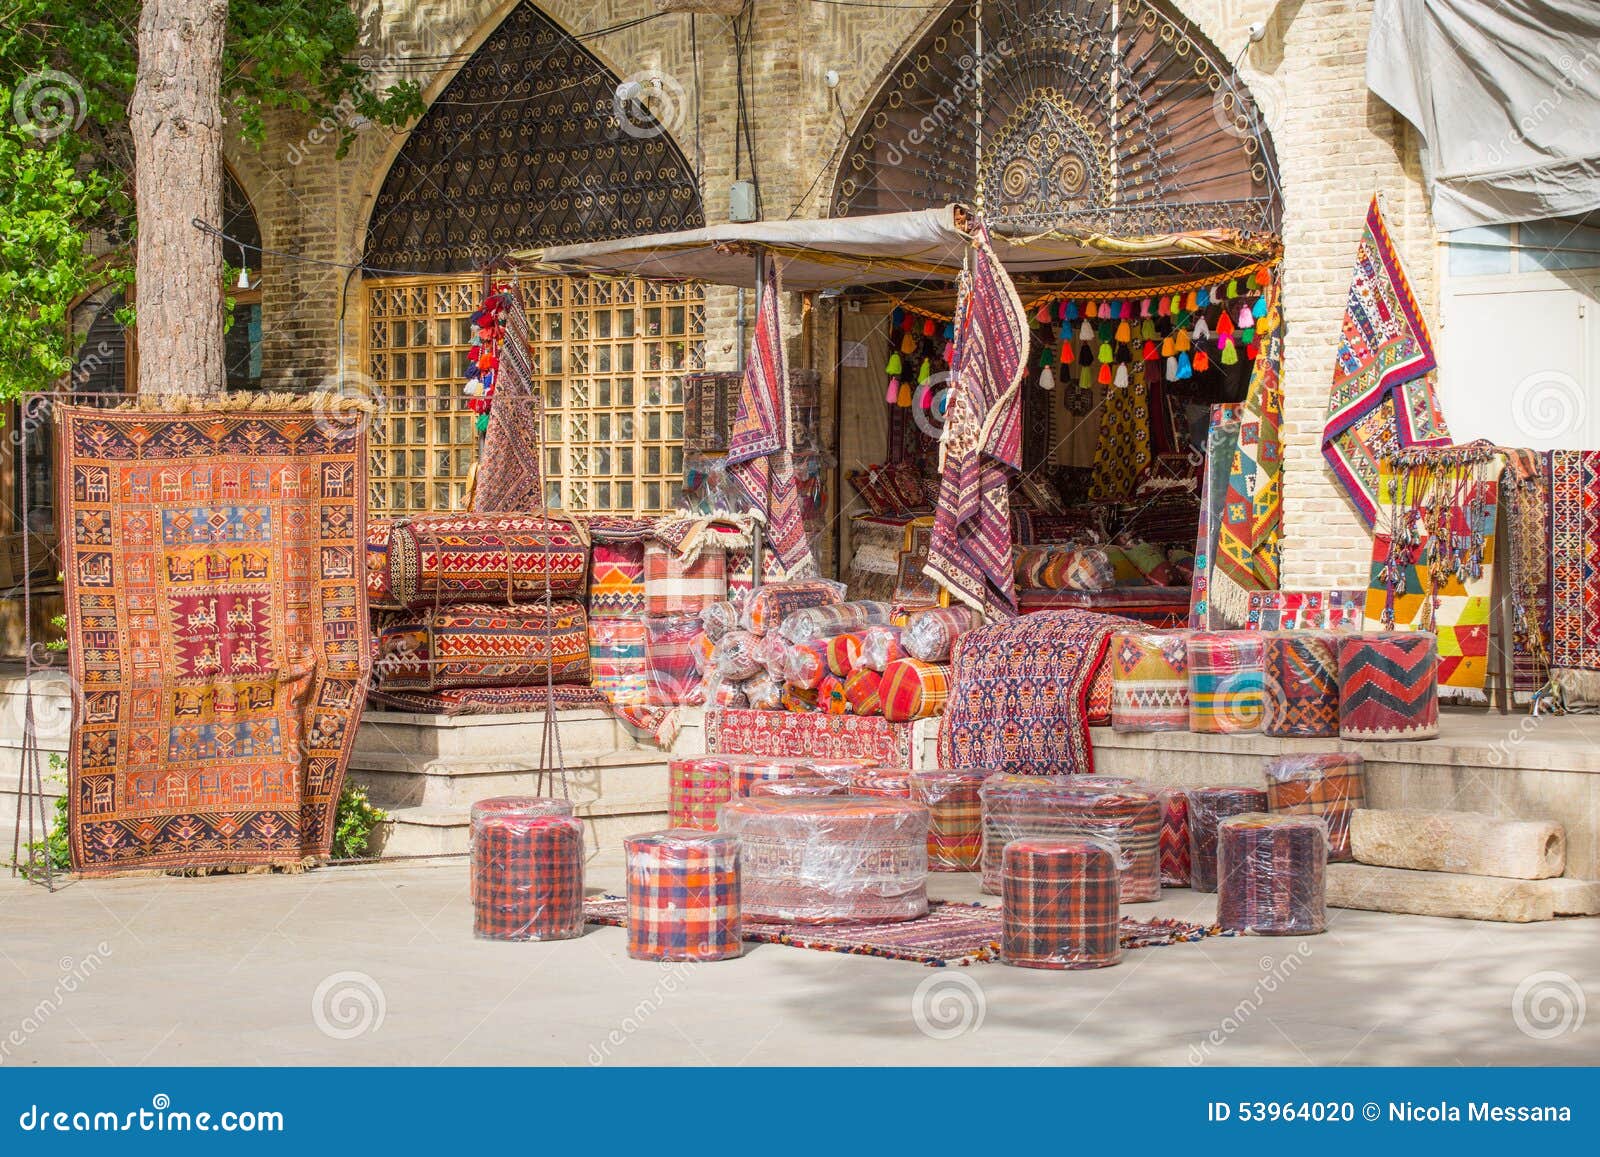 bazar in shiraz, iran